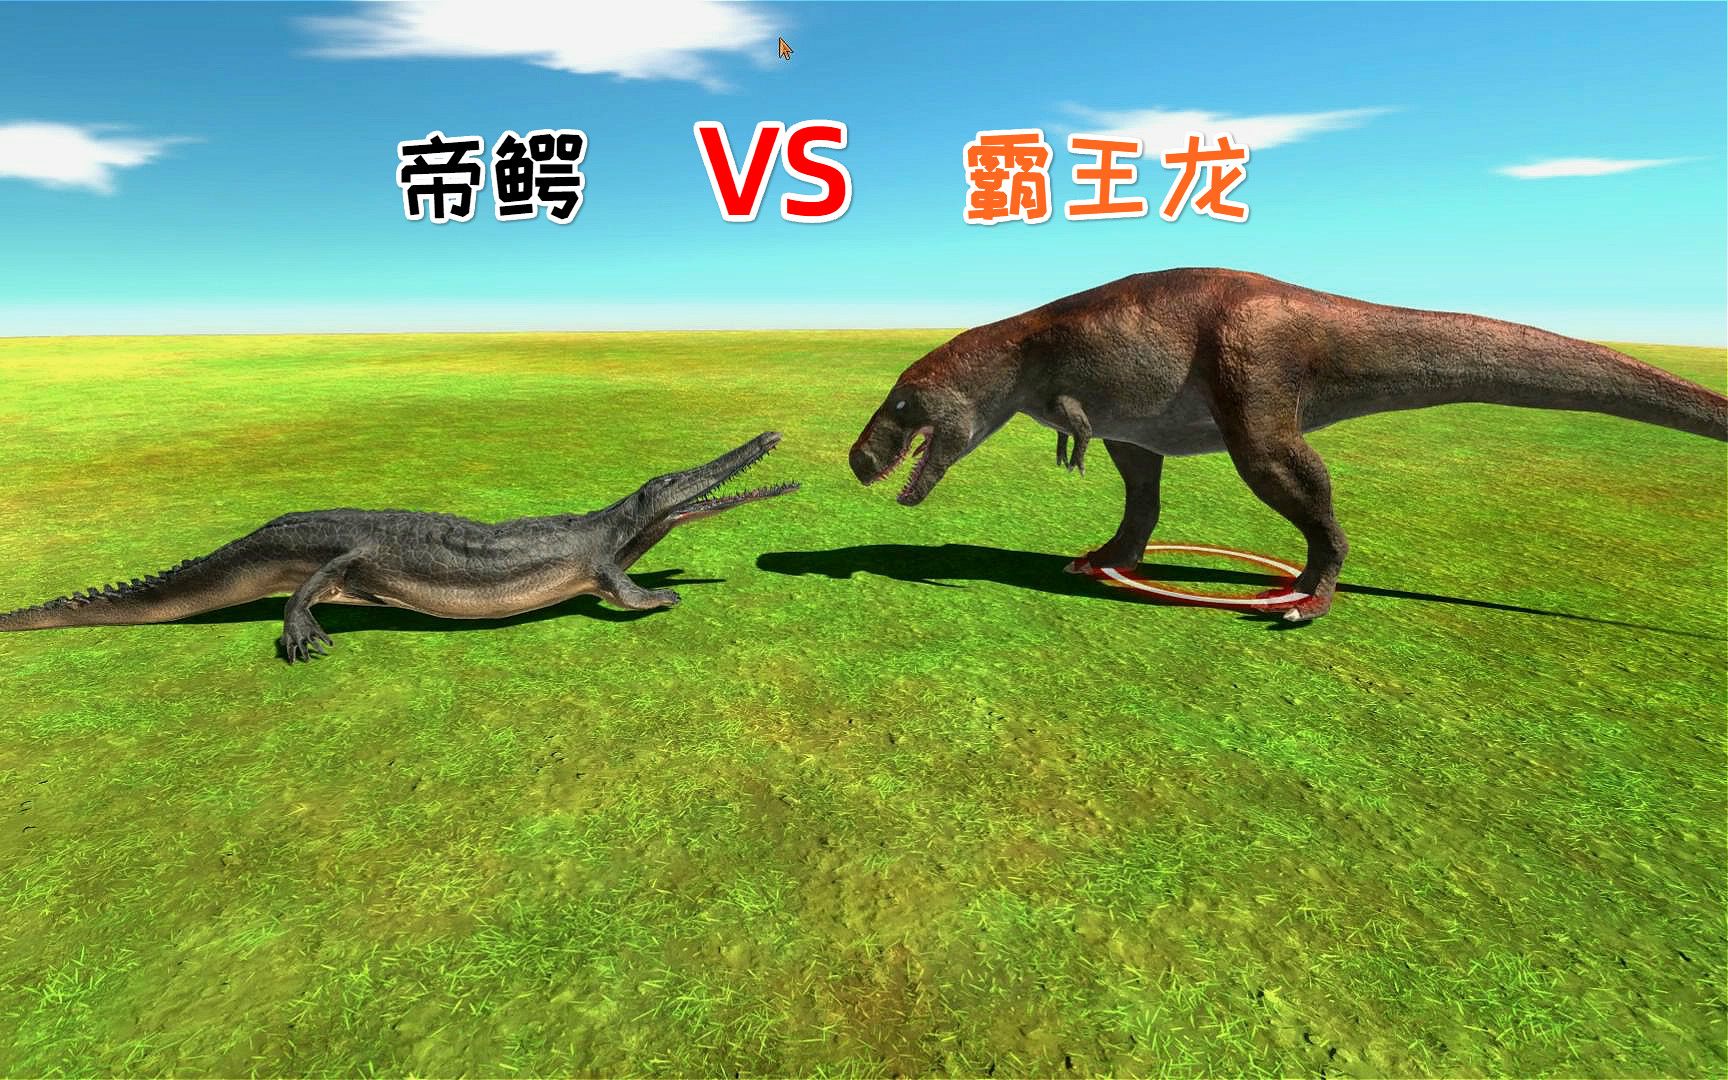 霸王龙和鳄鱼之王帝王鳄展开了决斗谁能赢结局有点意外